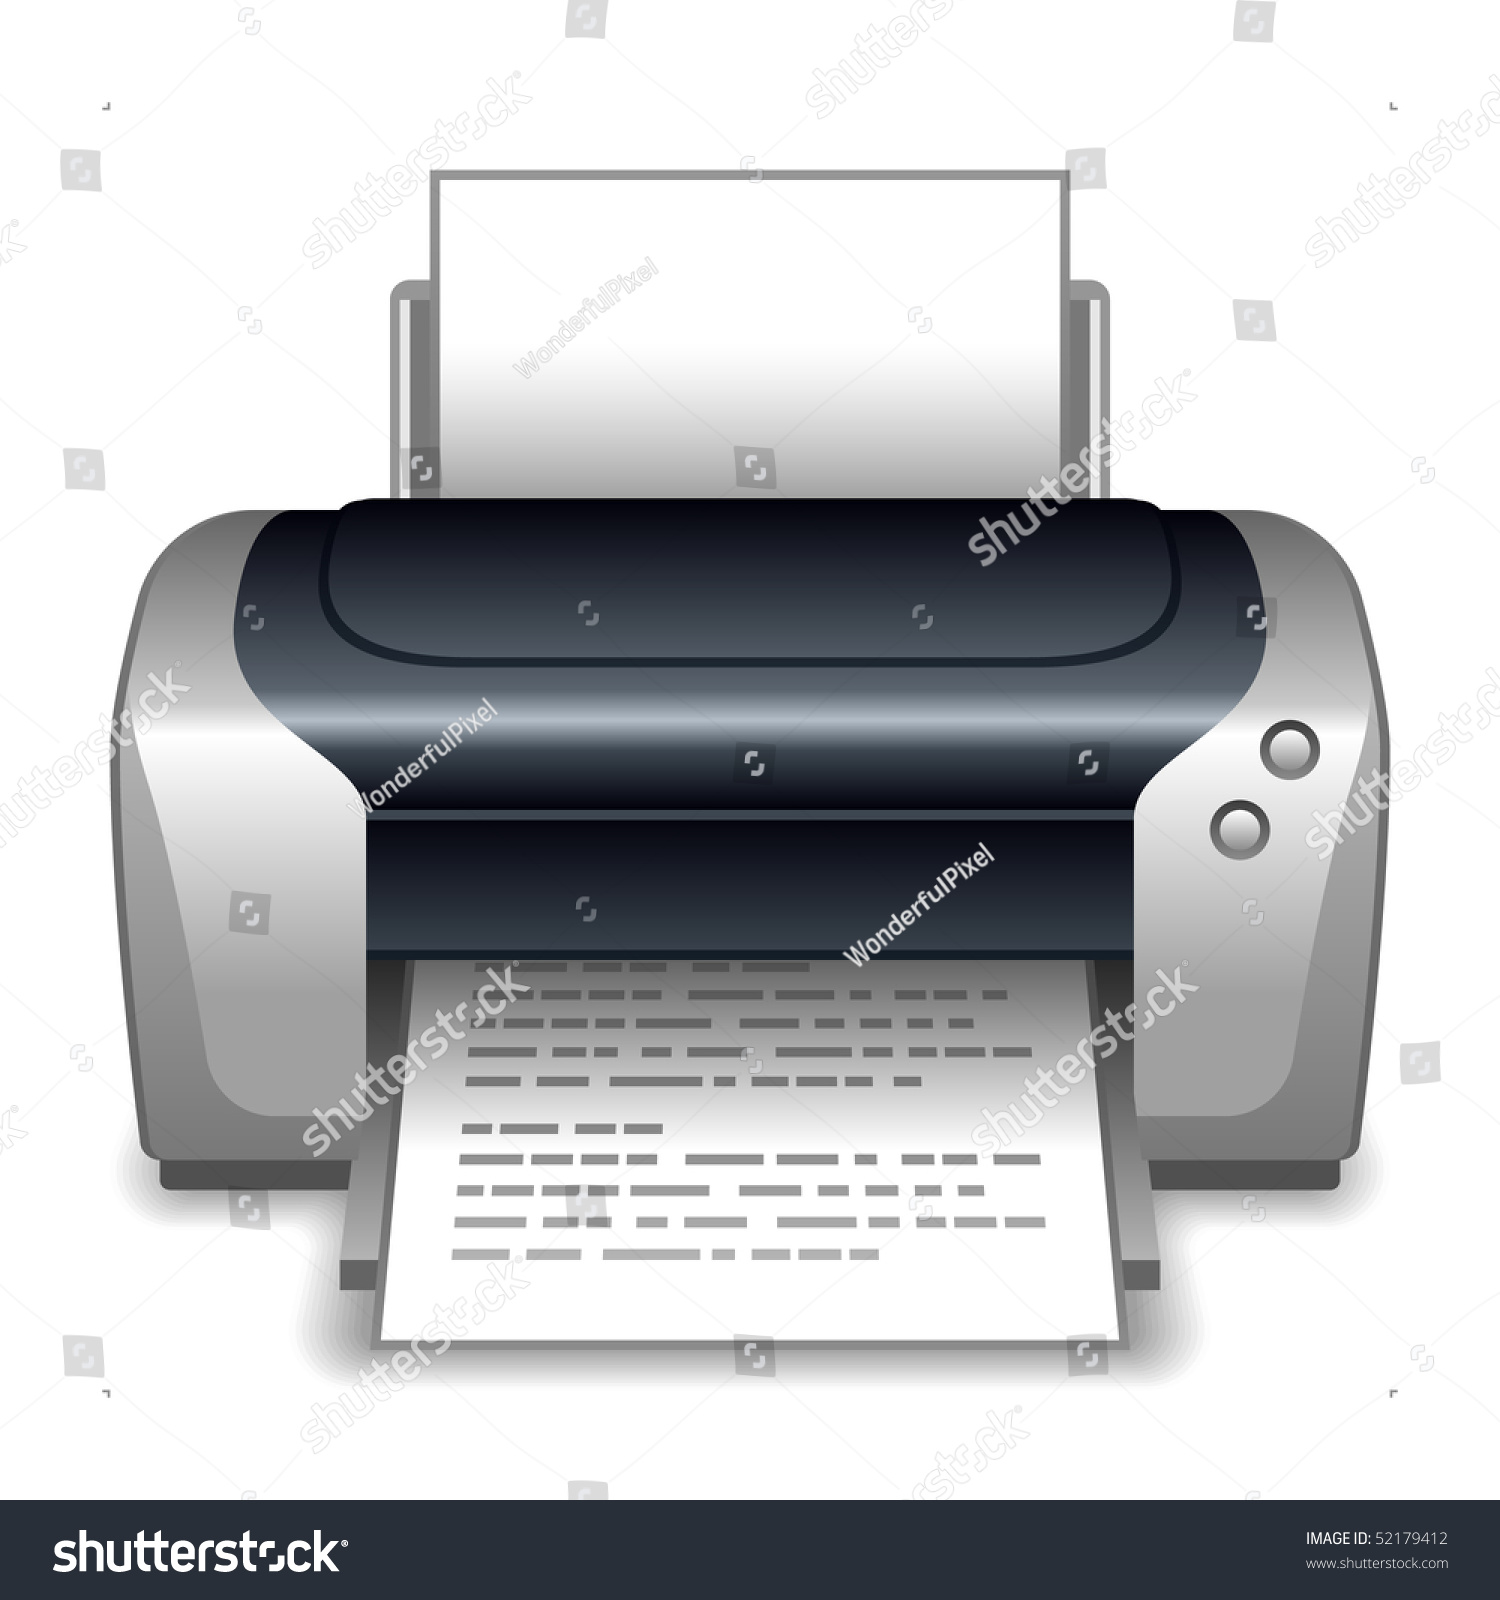 Принтер векторное изображение